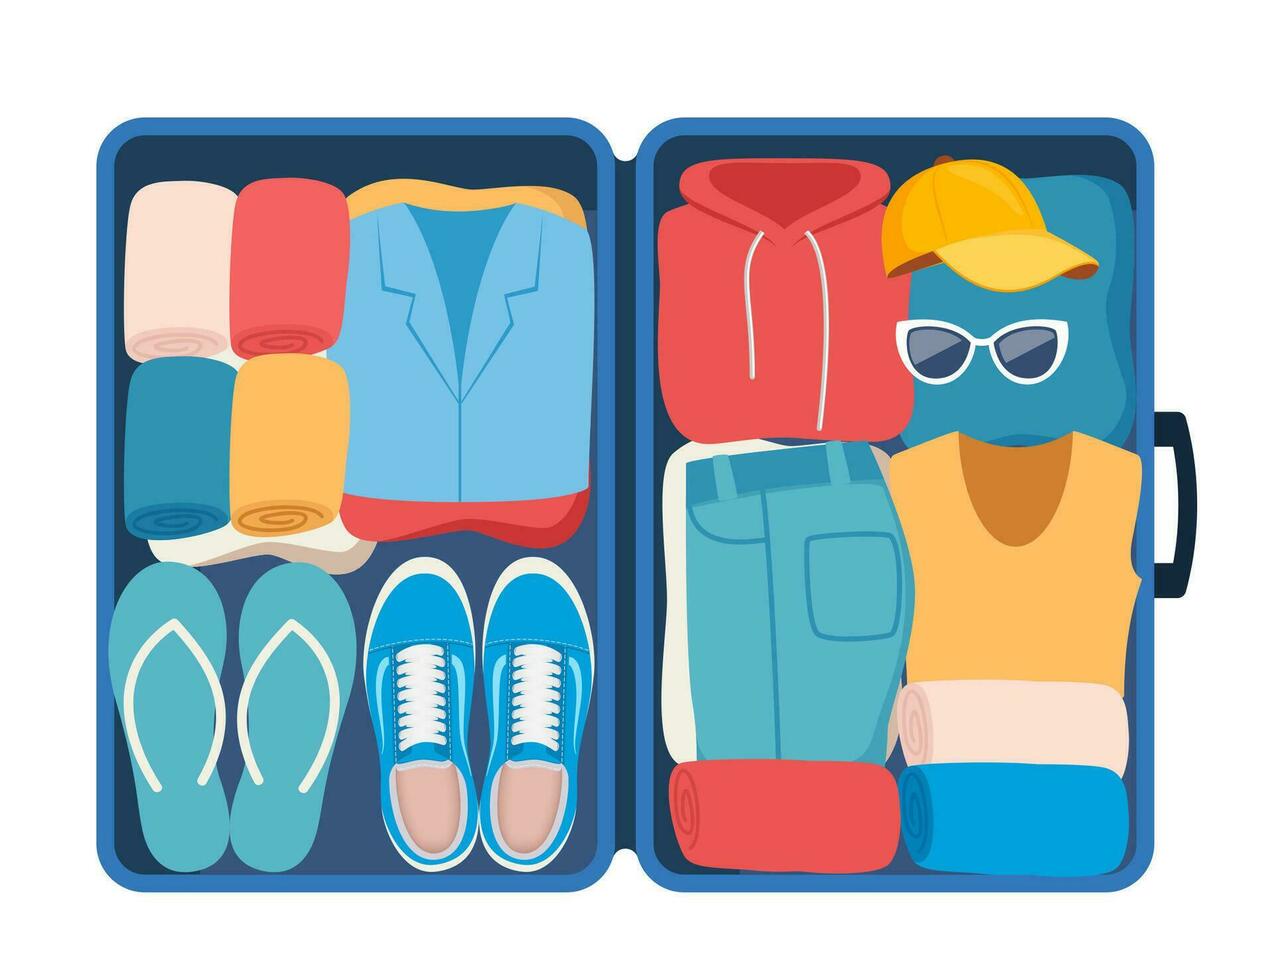 Koffer mit verpackt Kleider zum Reise im oben Sicht. Kleidung, Schuhwerk und Zubehör. persönlich Besitz im Gepäck, gehen auf Urlaub, Reise oder Geschäft Reise. Vektor Illustration.